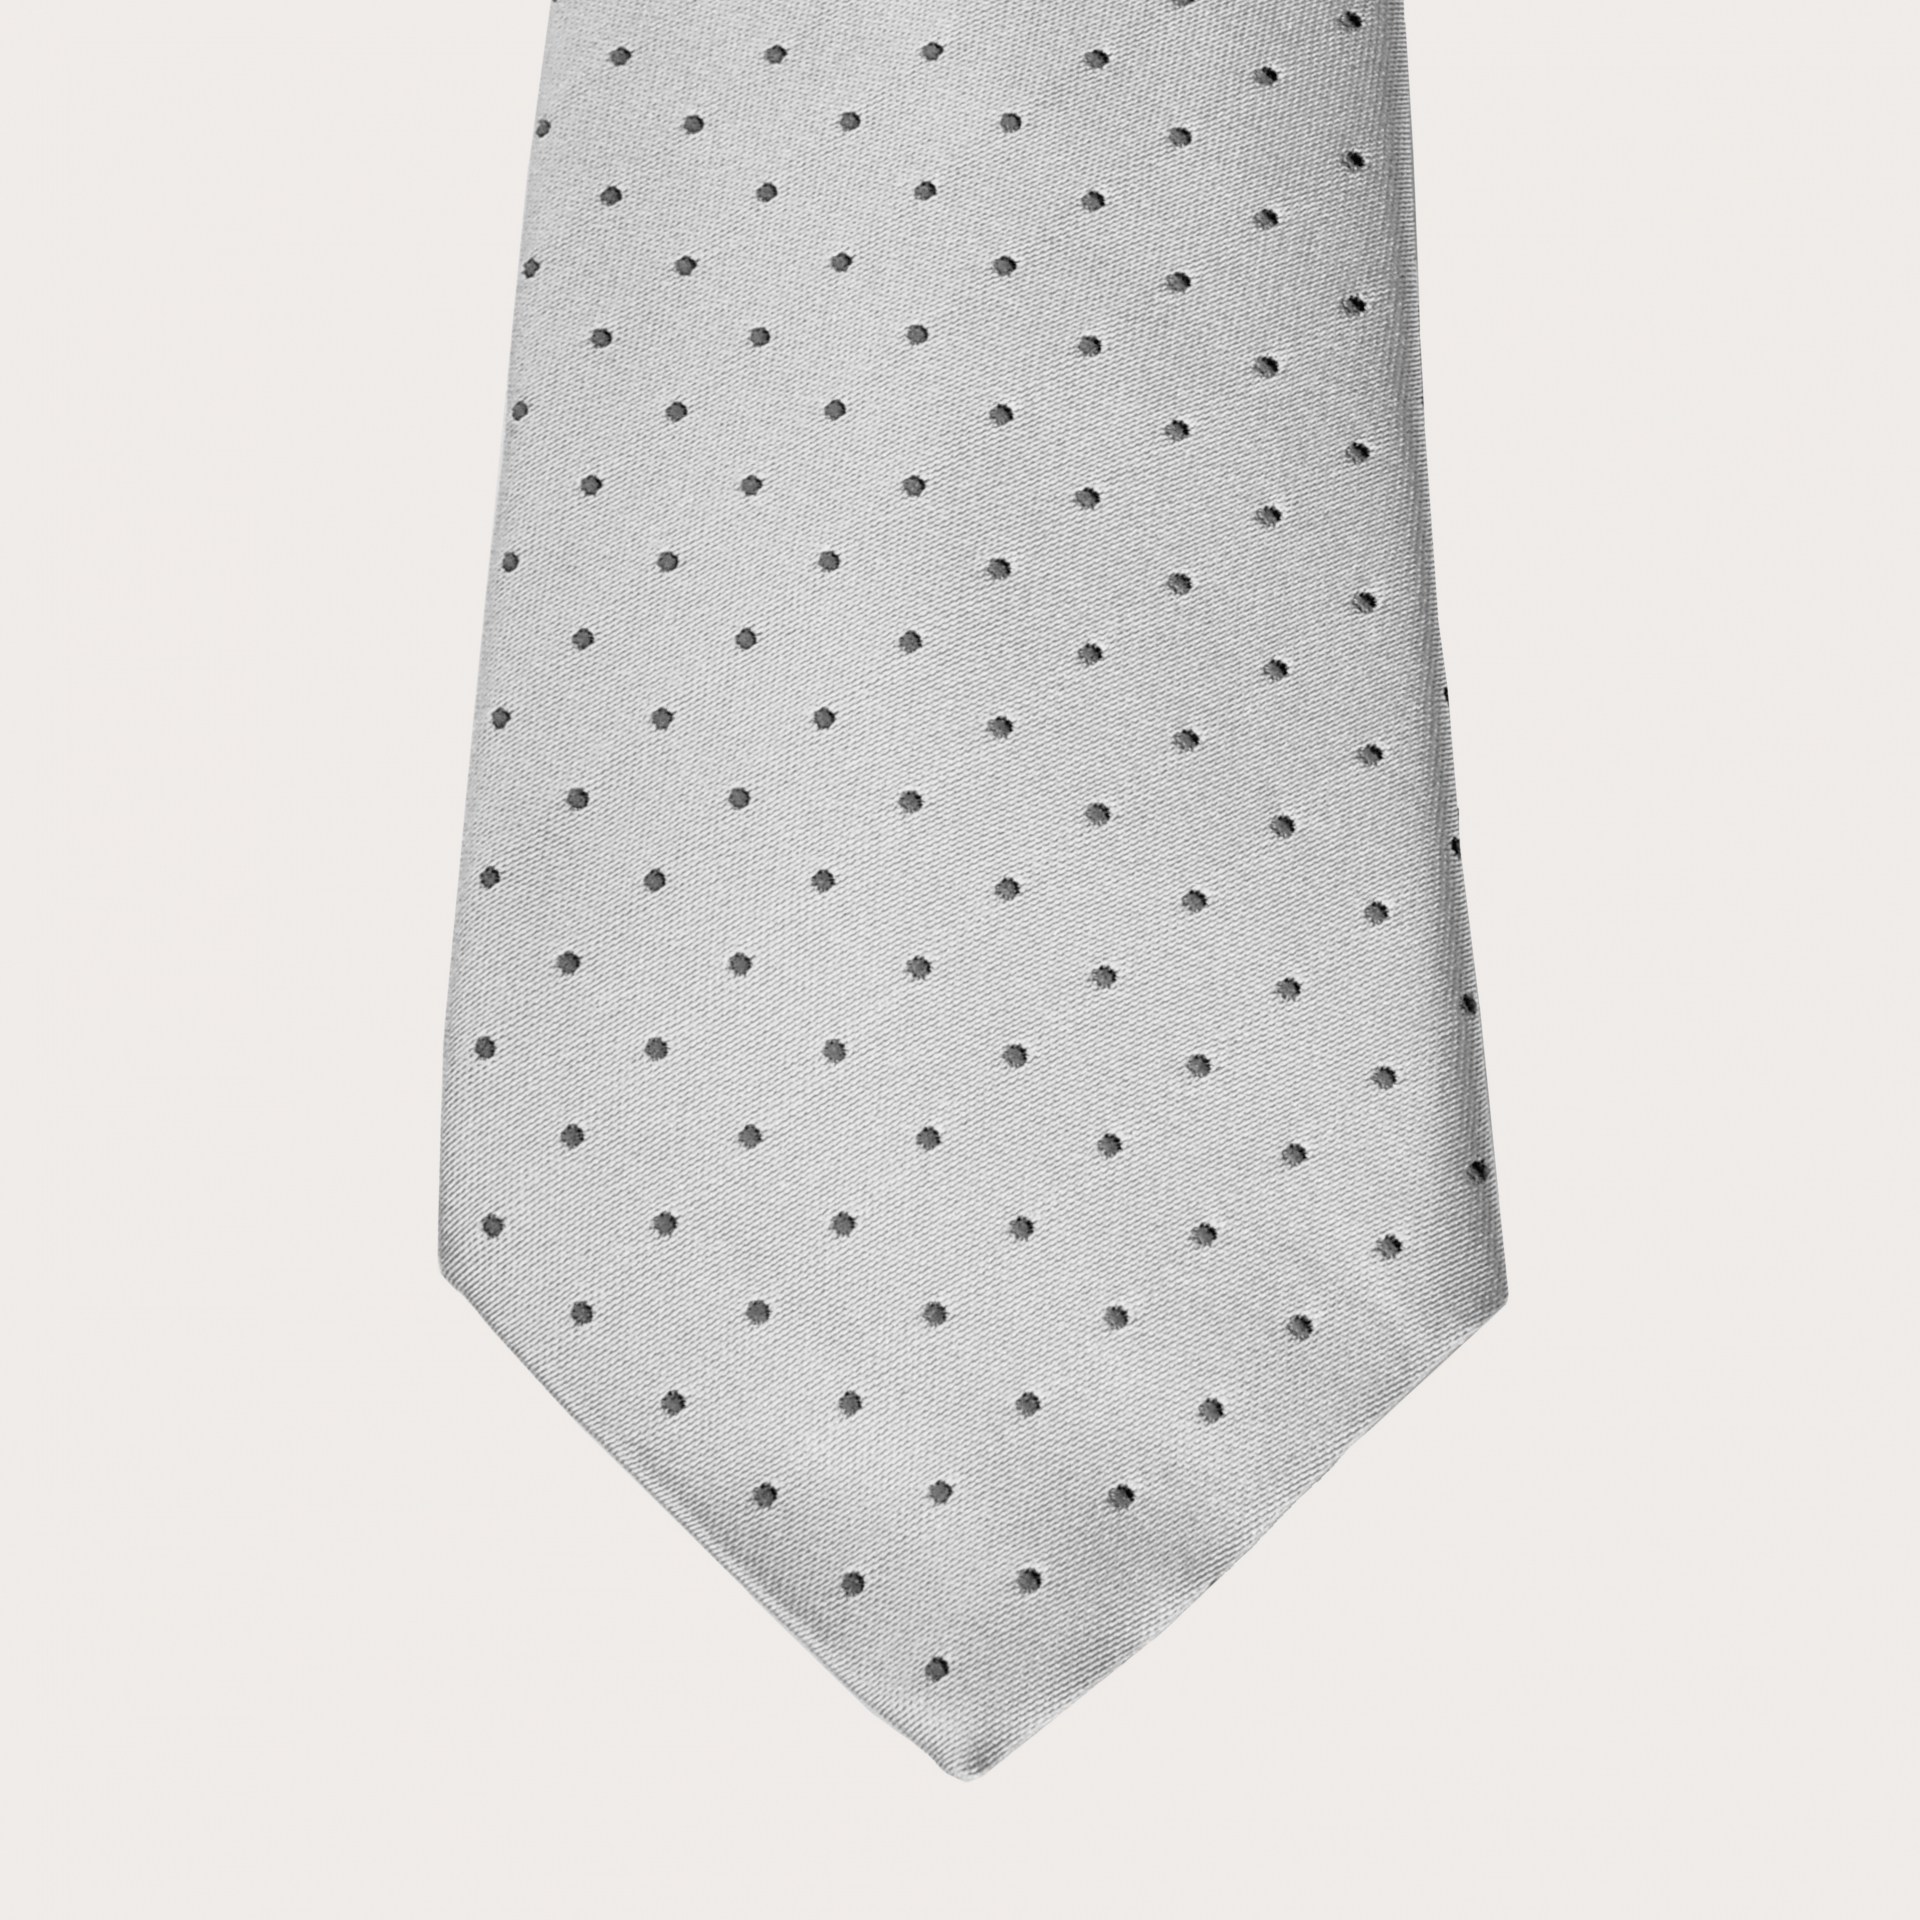 Brucle Cravatta in seta pois puntaspillo grigio